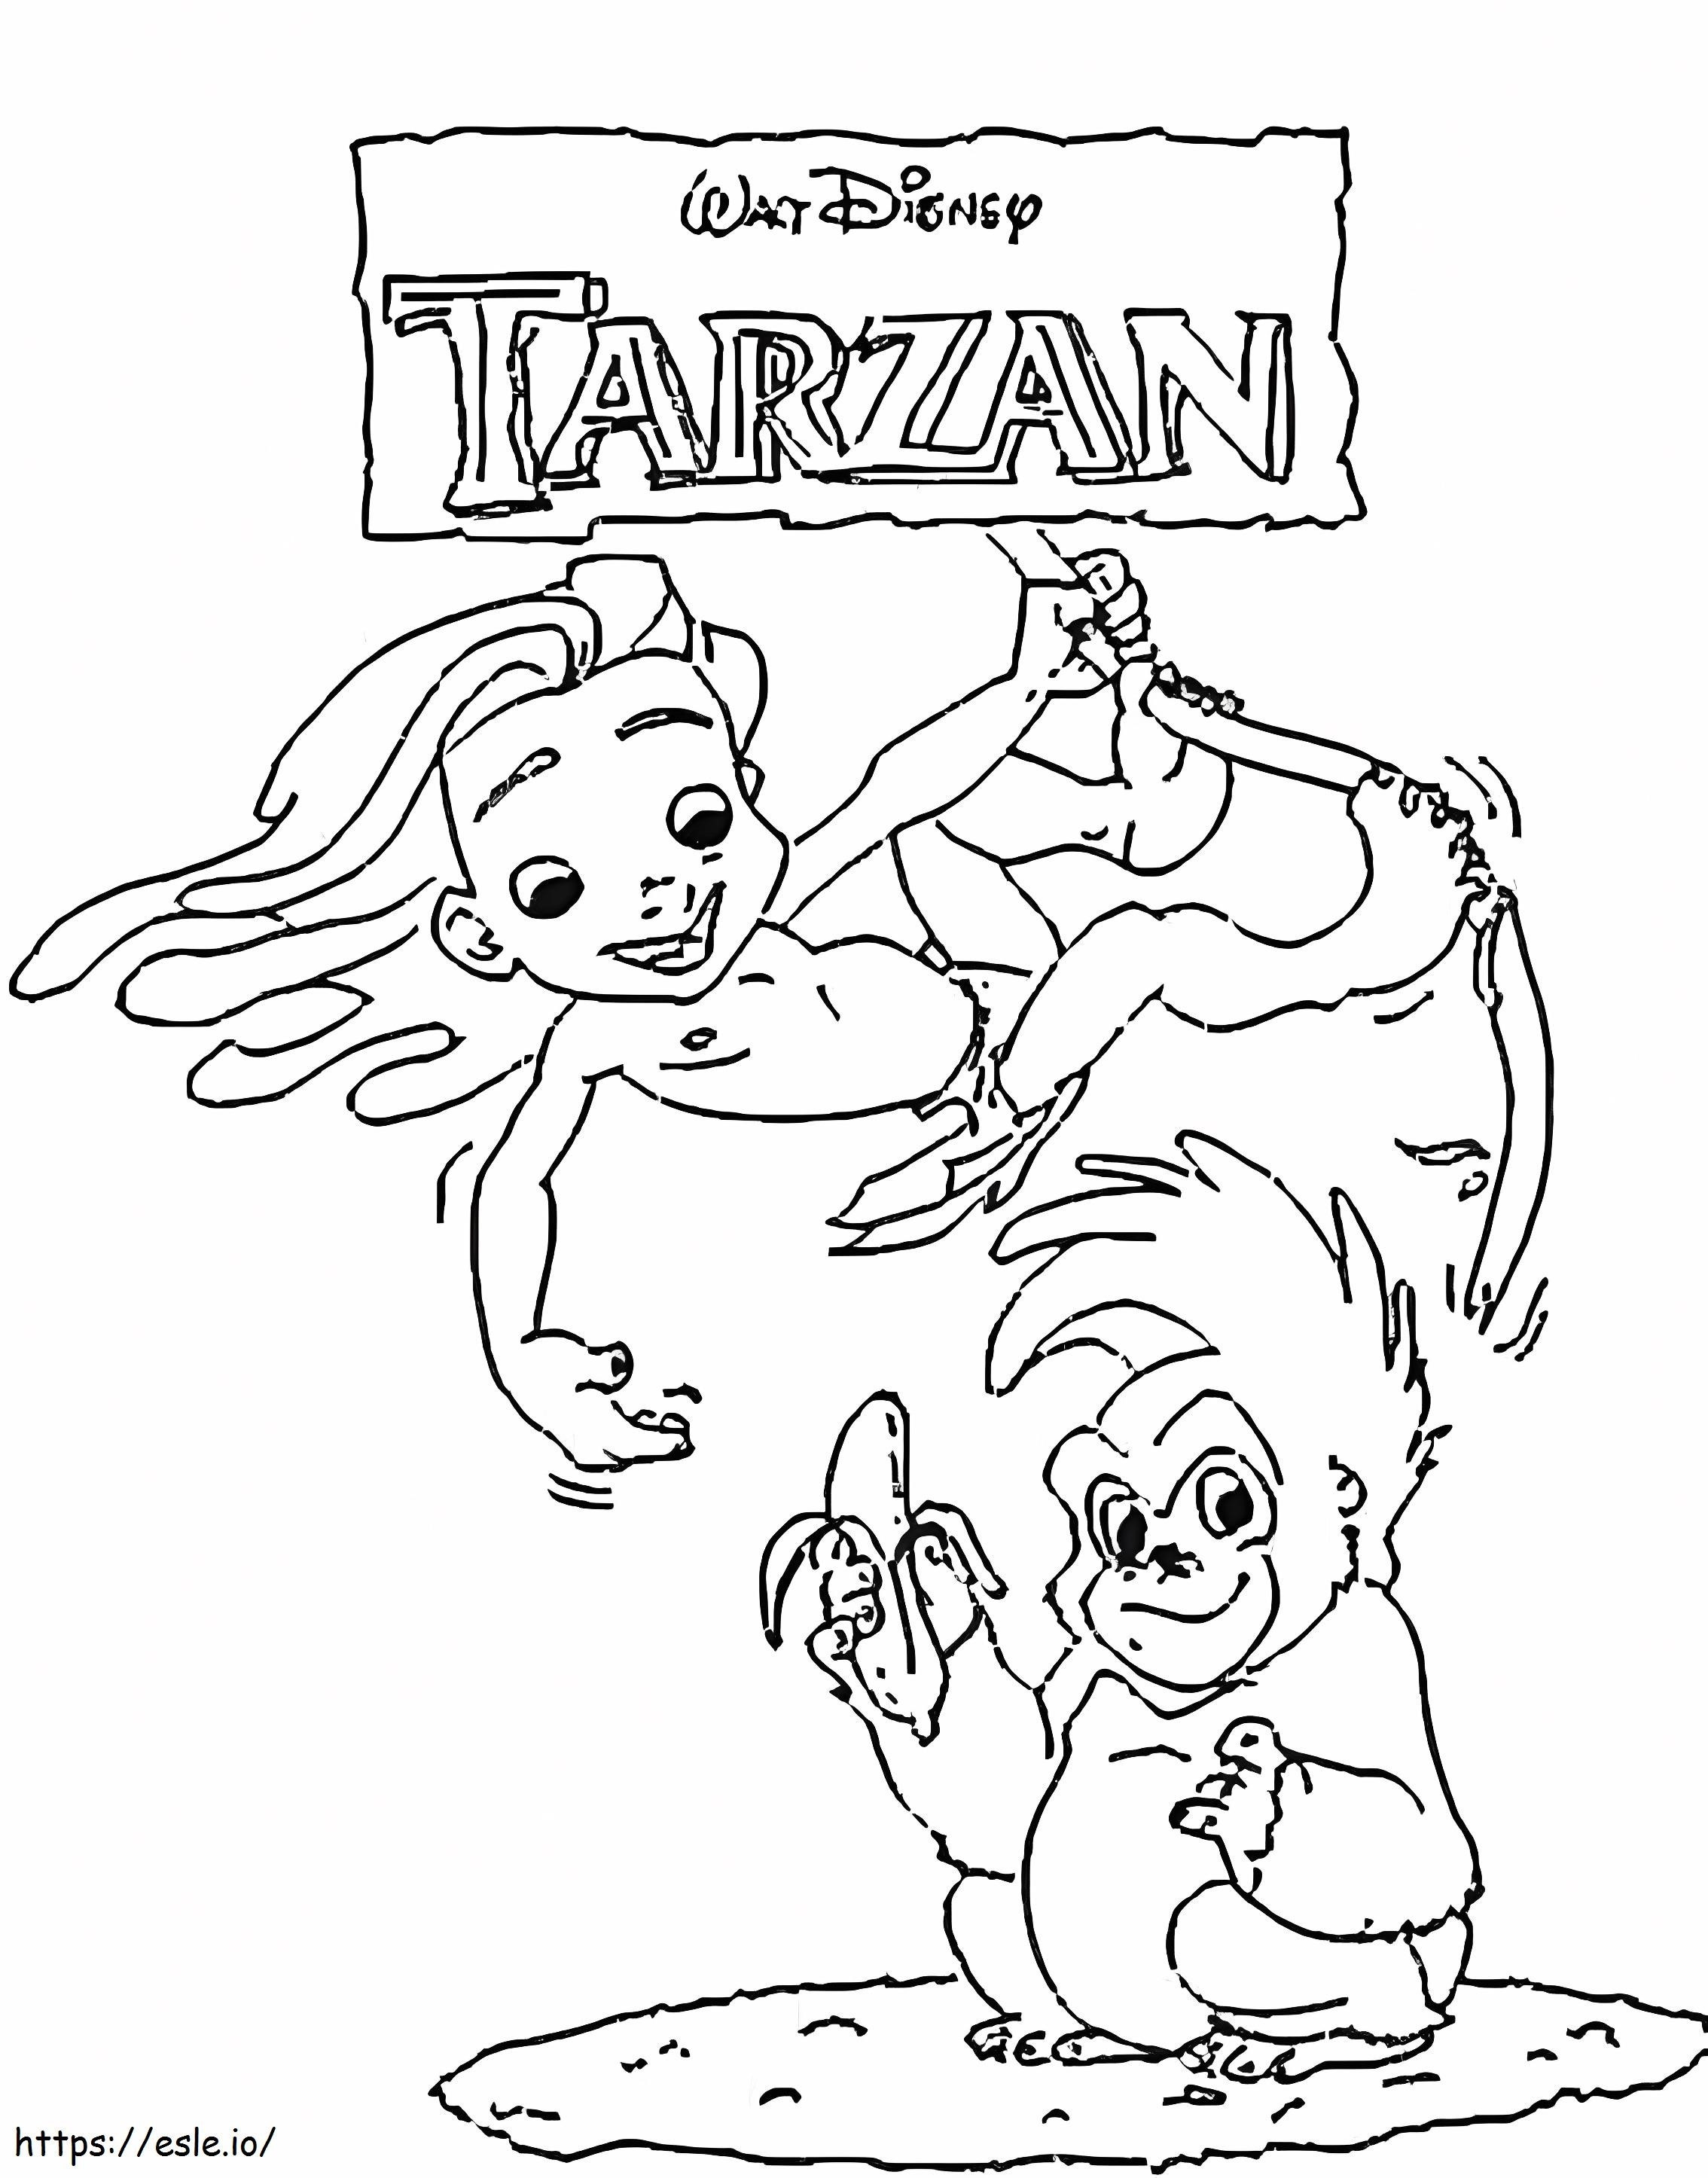 El pequeño Tarzán y el mono para colorear